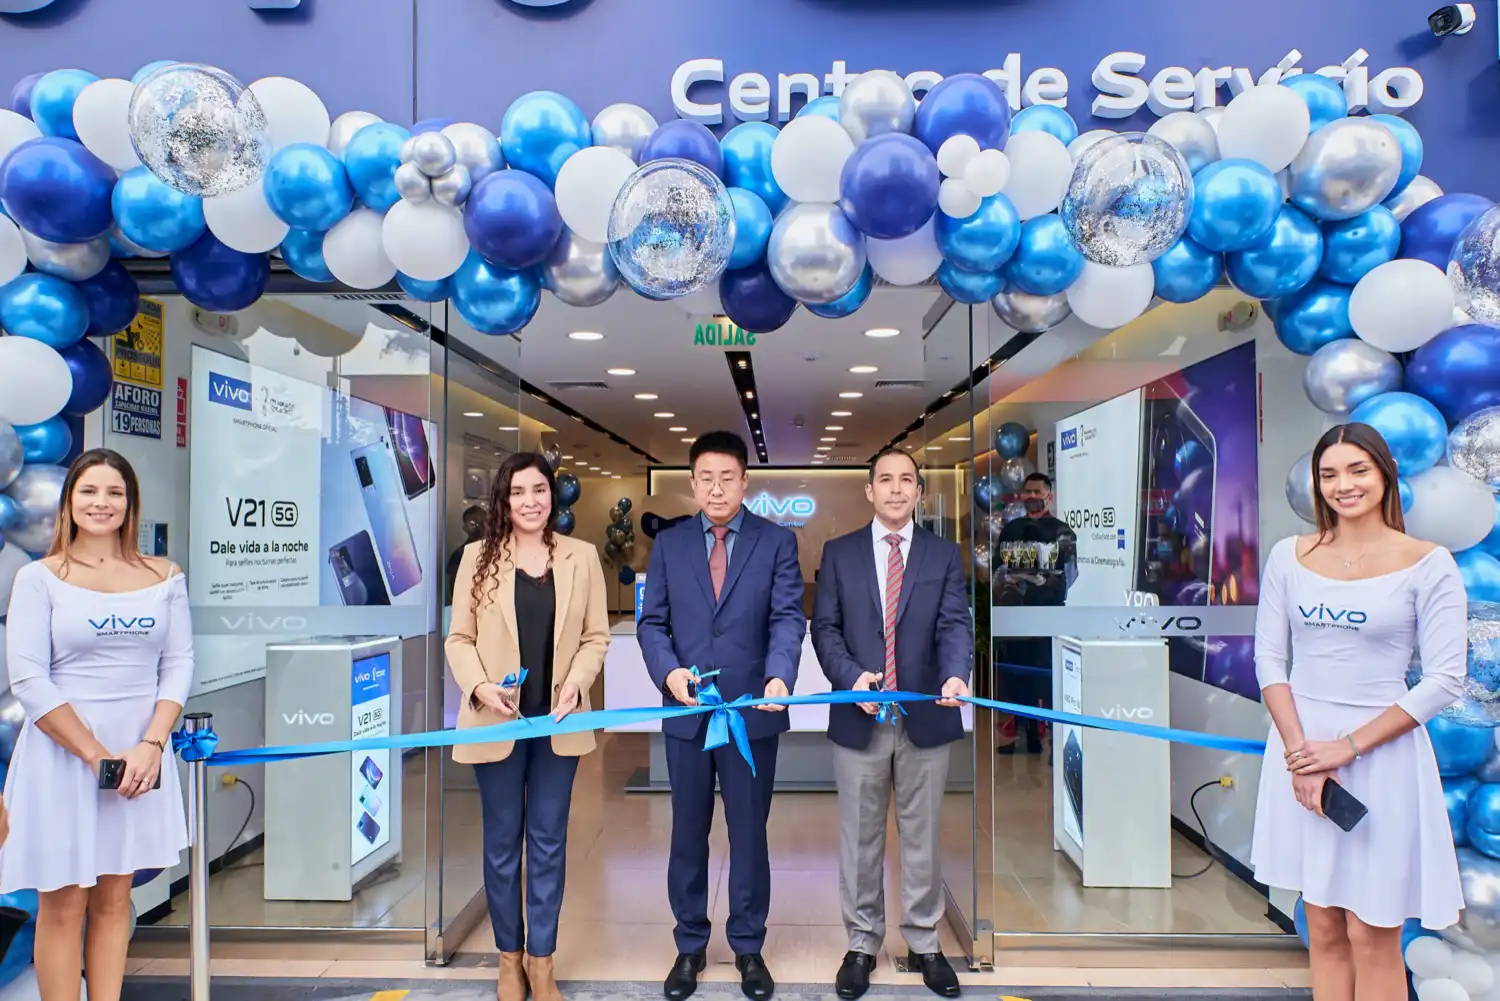 Vivo Perú inauguró su primer Centro de Servicio